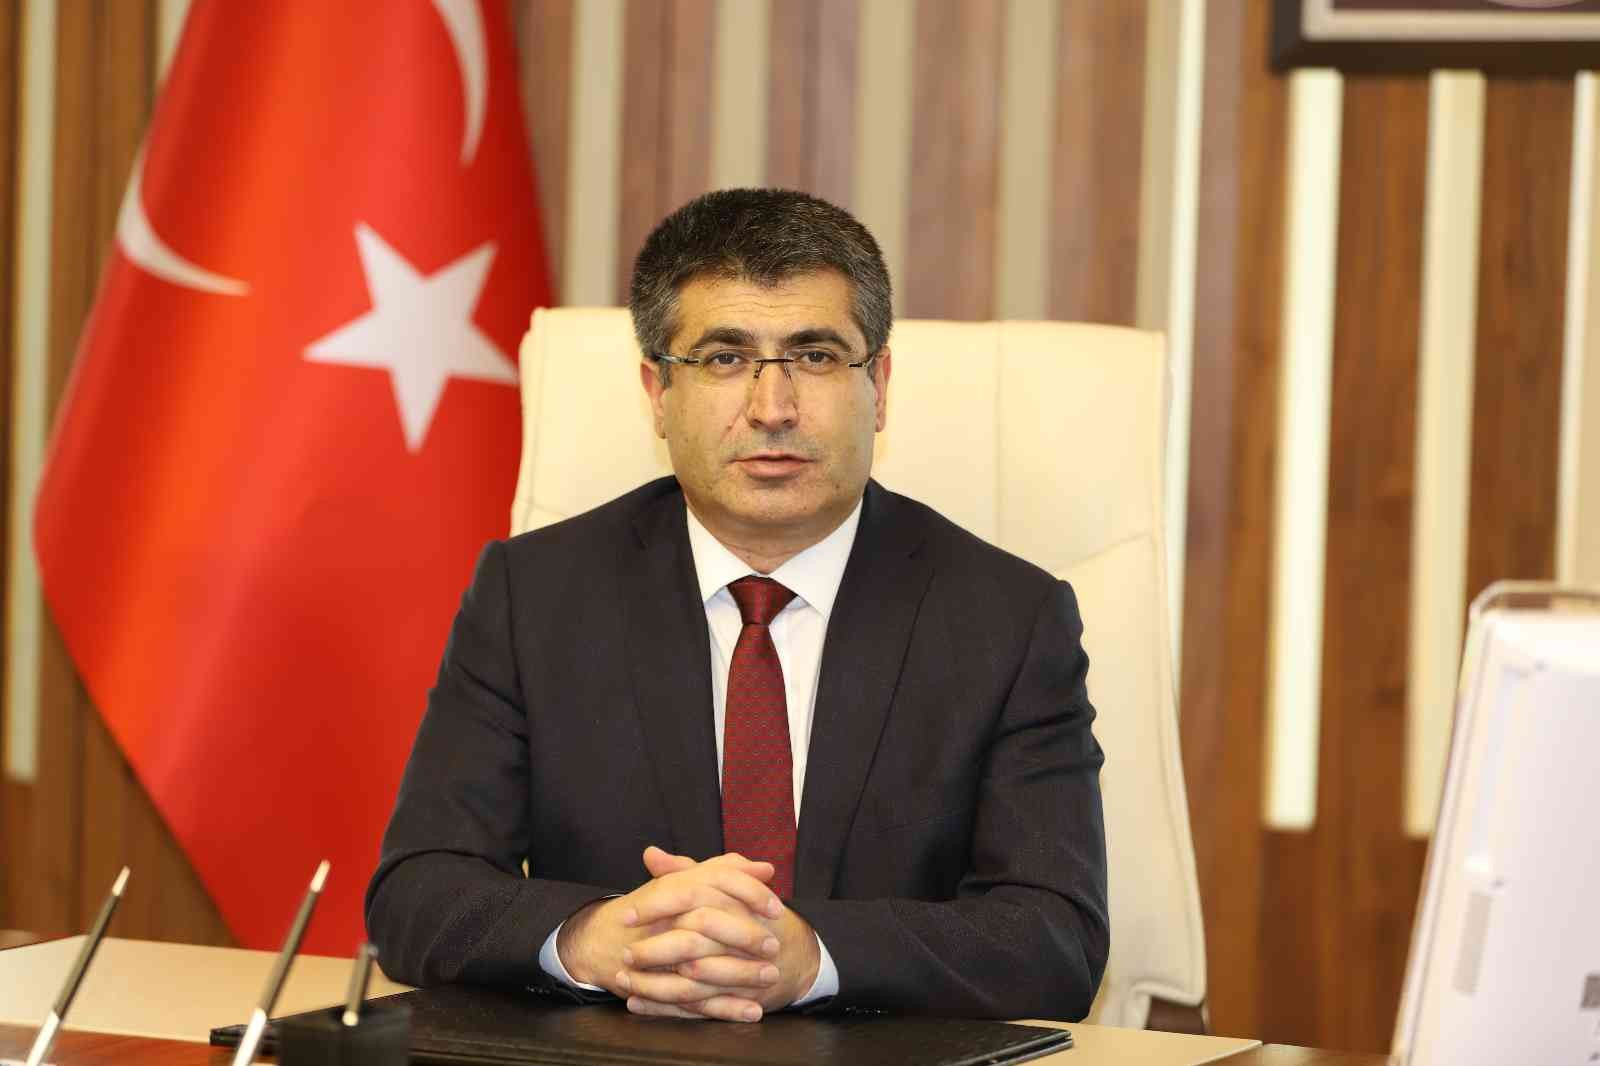 NEVÜ Rektörü Prof. Dr. Aktekin’den ’29 Ekim Cumhuriyet Bayramı’ mesajı